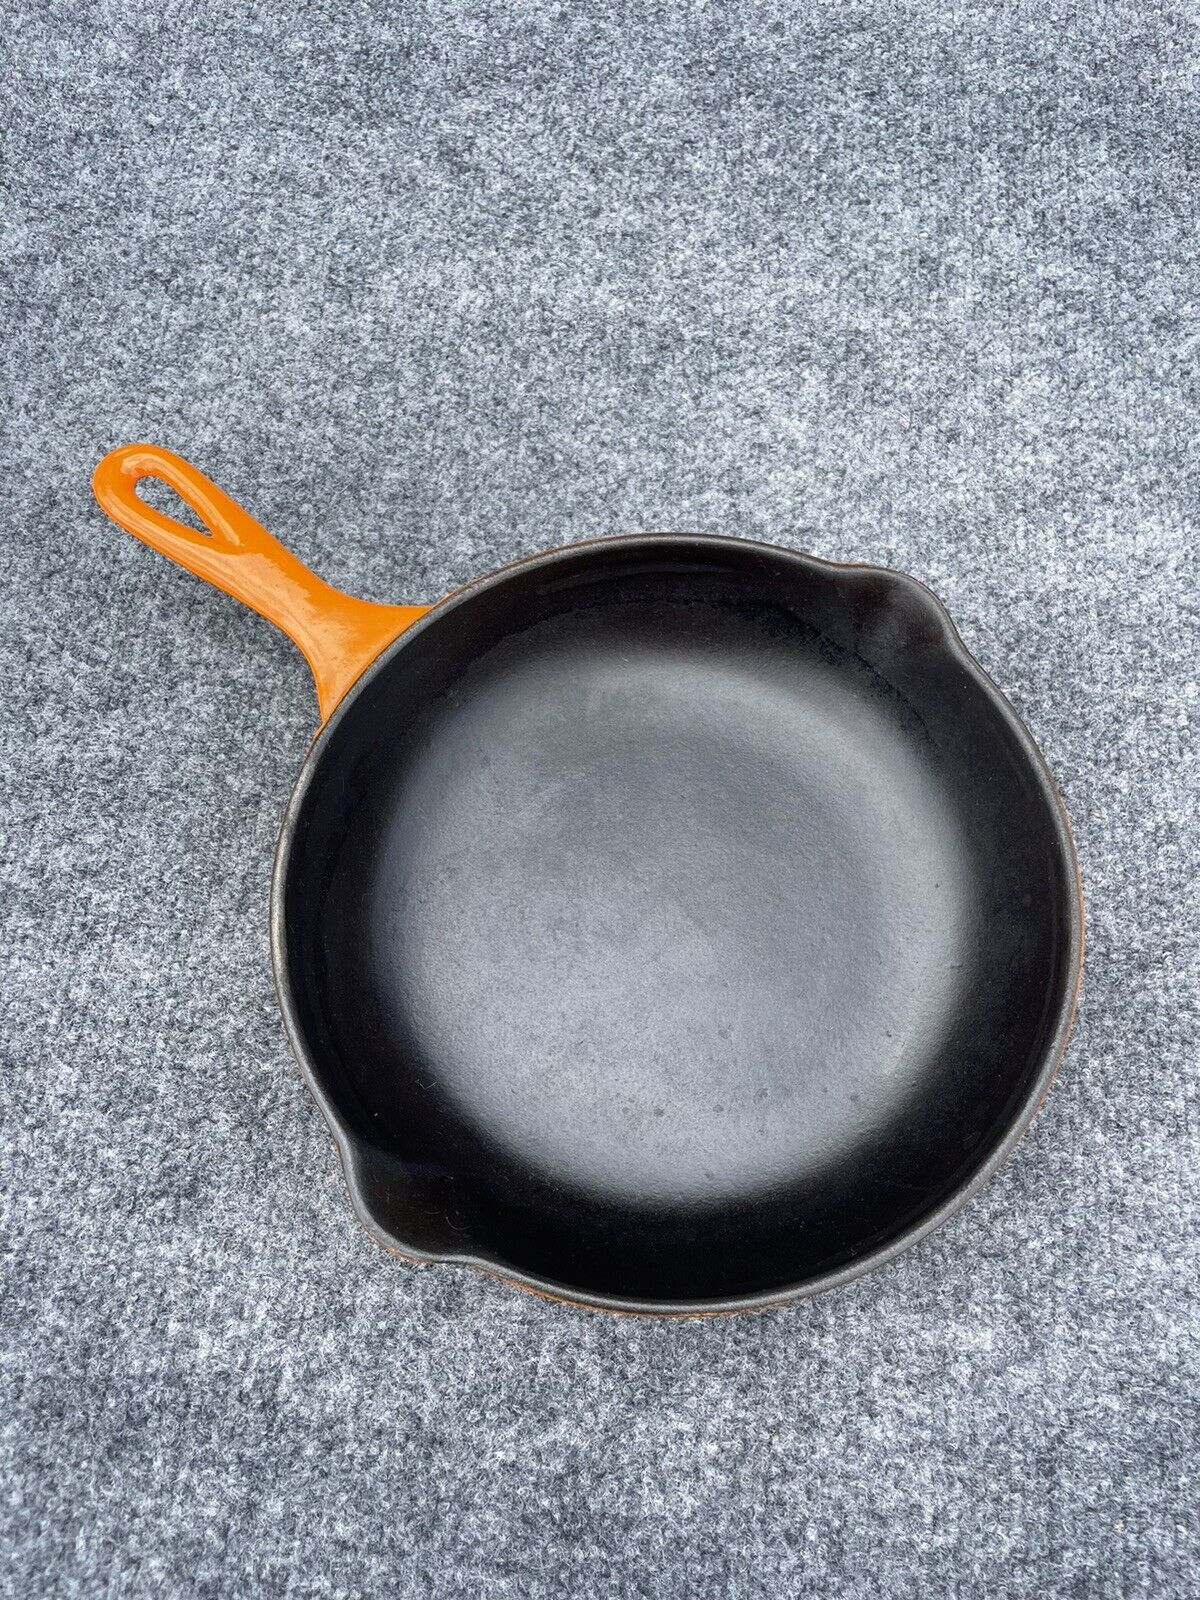 Cousances Le Creuset Orange Enamel Cast Iron Skillet Frying Pan # 23 France 9\